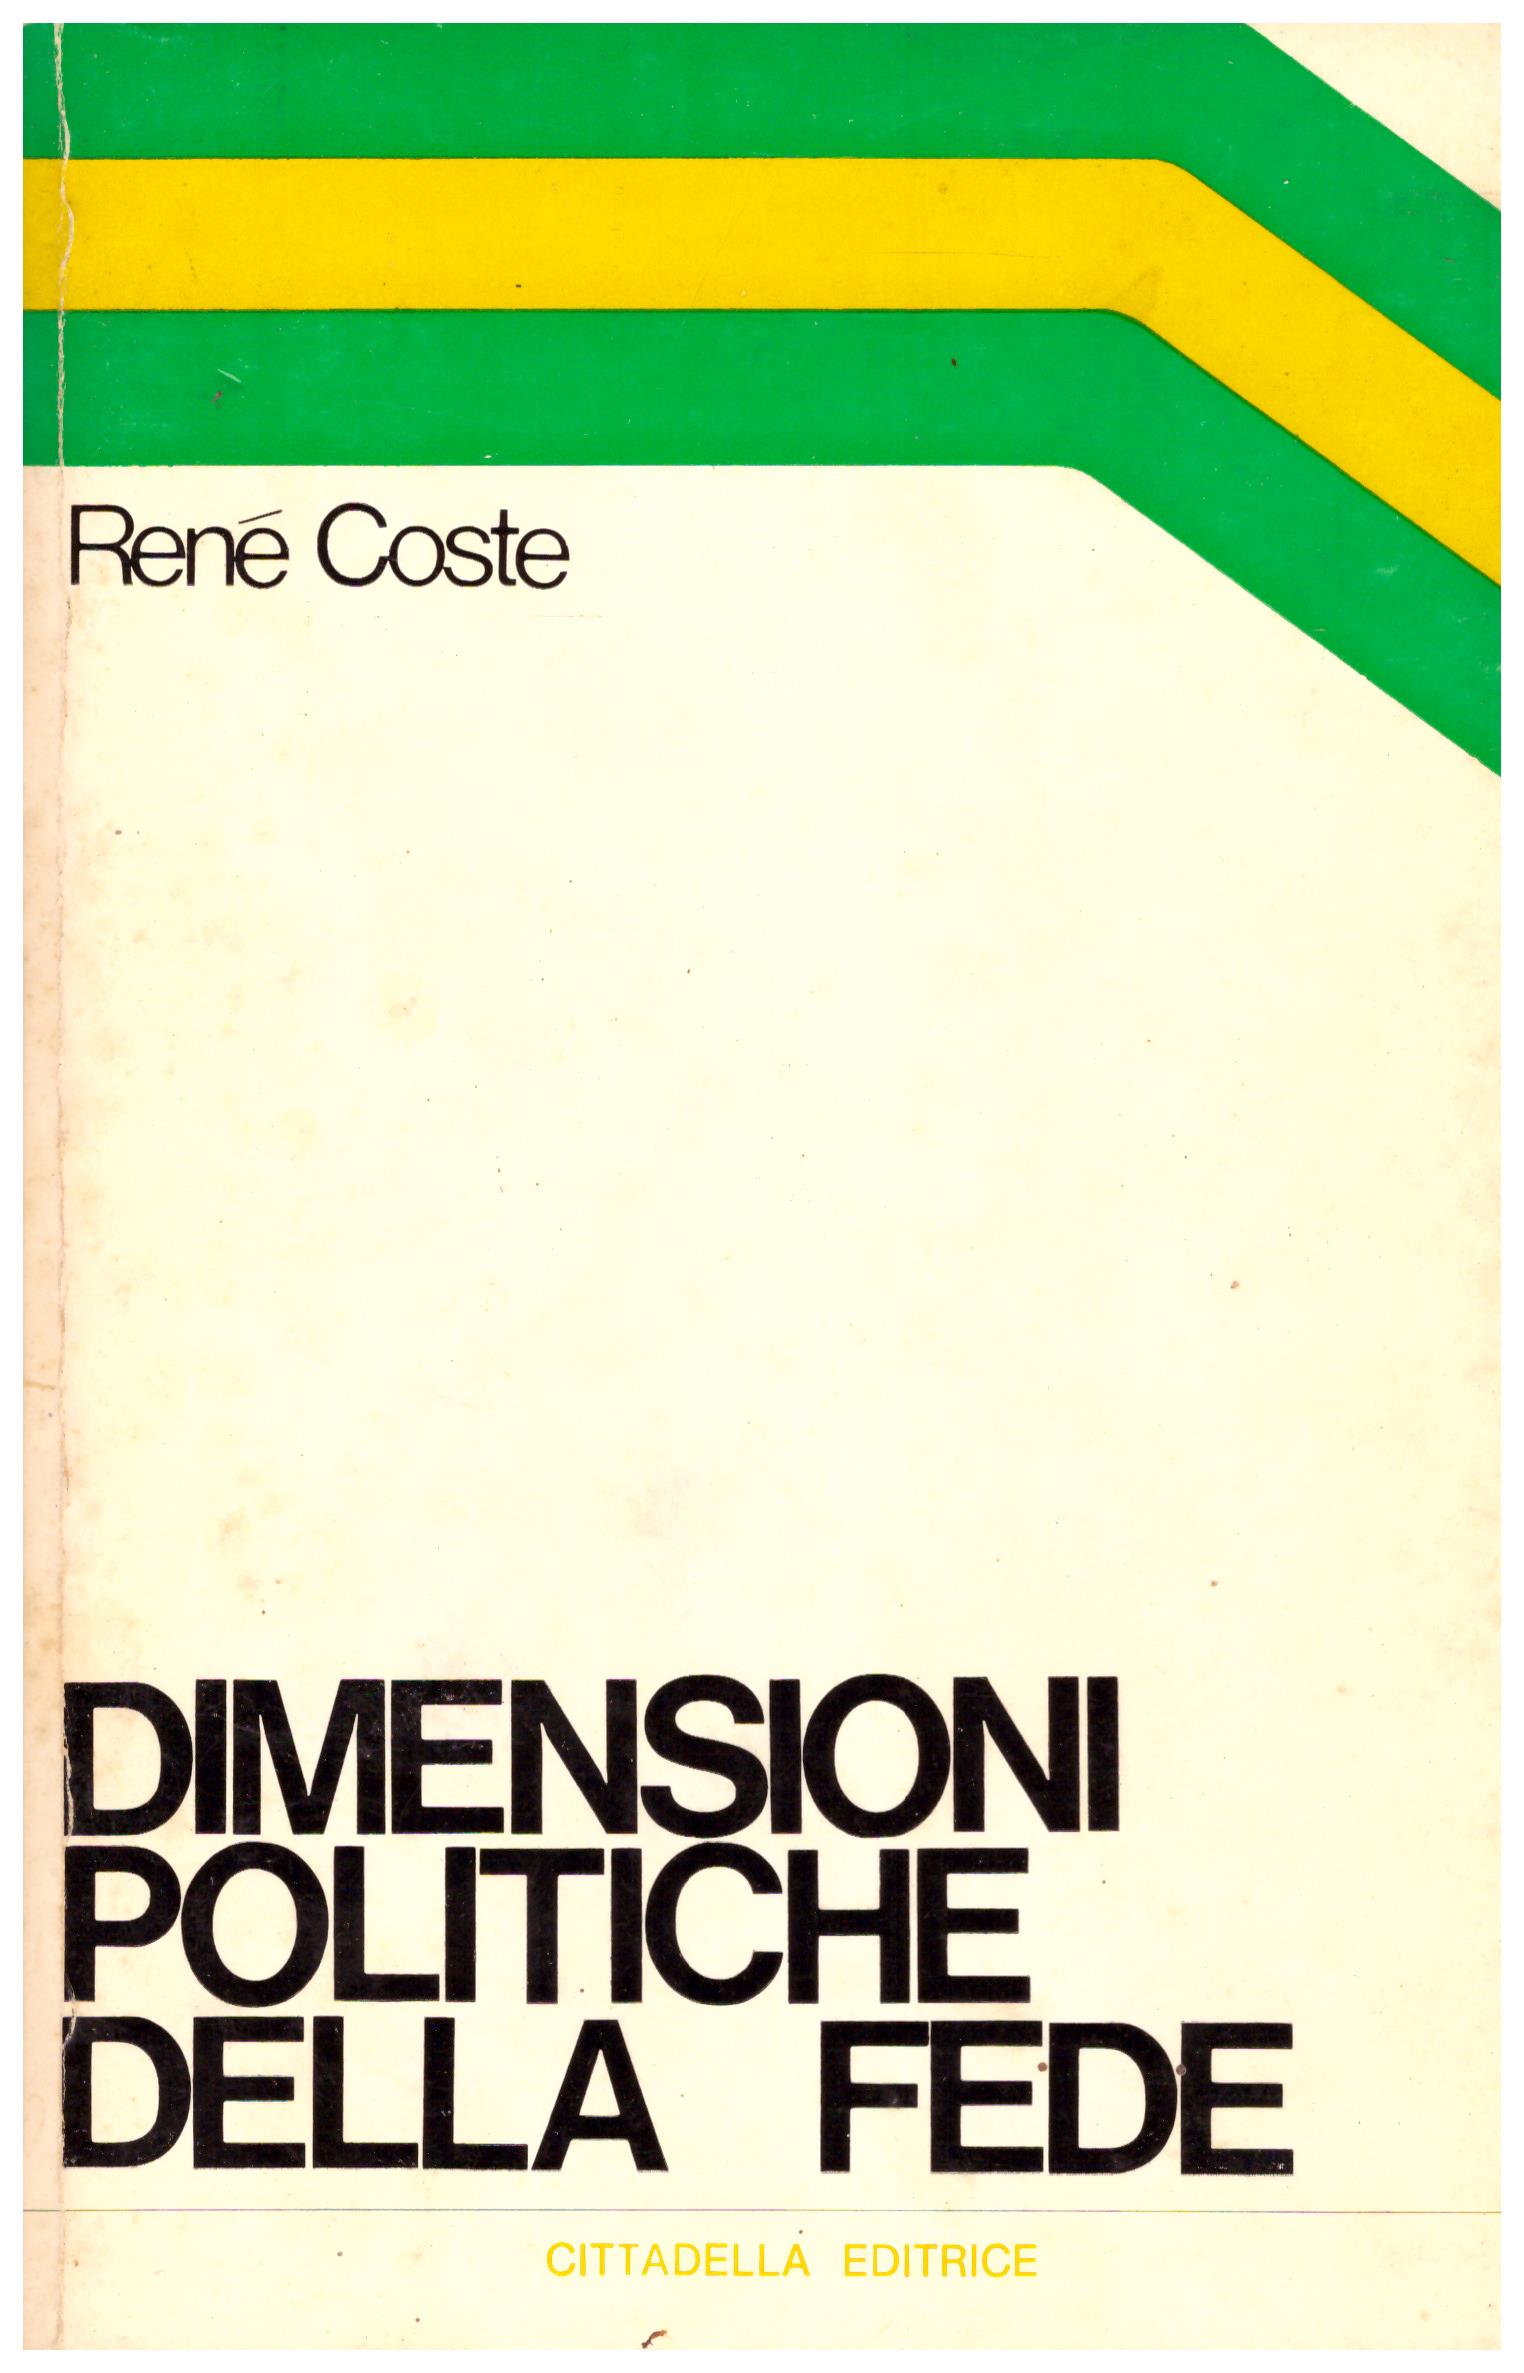 Titolo: Dimensioni politiche della fede Autore: Rene Coste Editore: cittadella editore, 1973